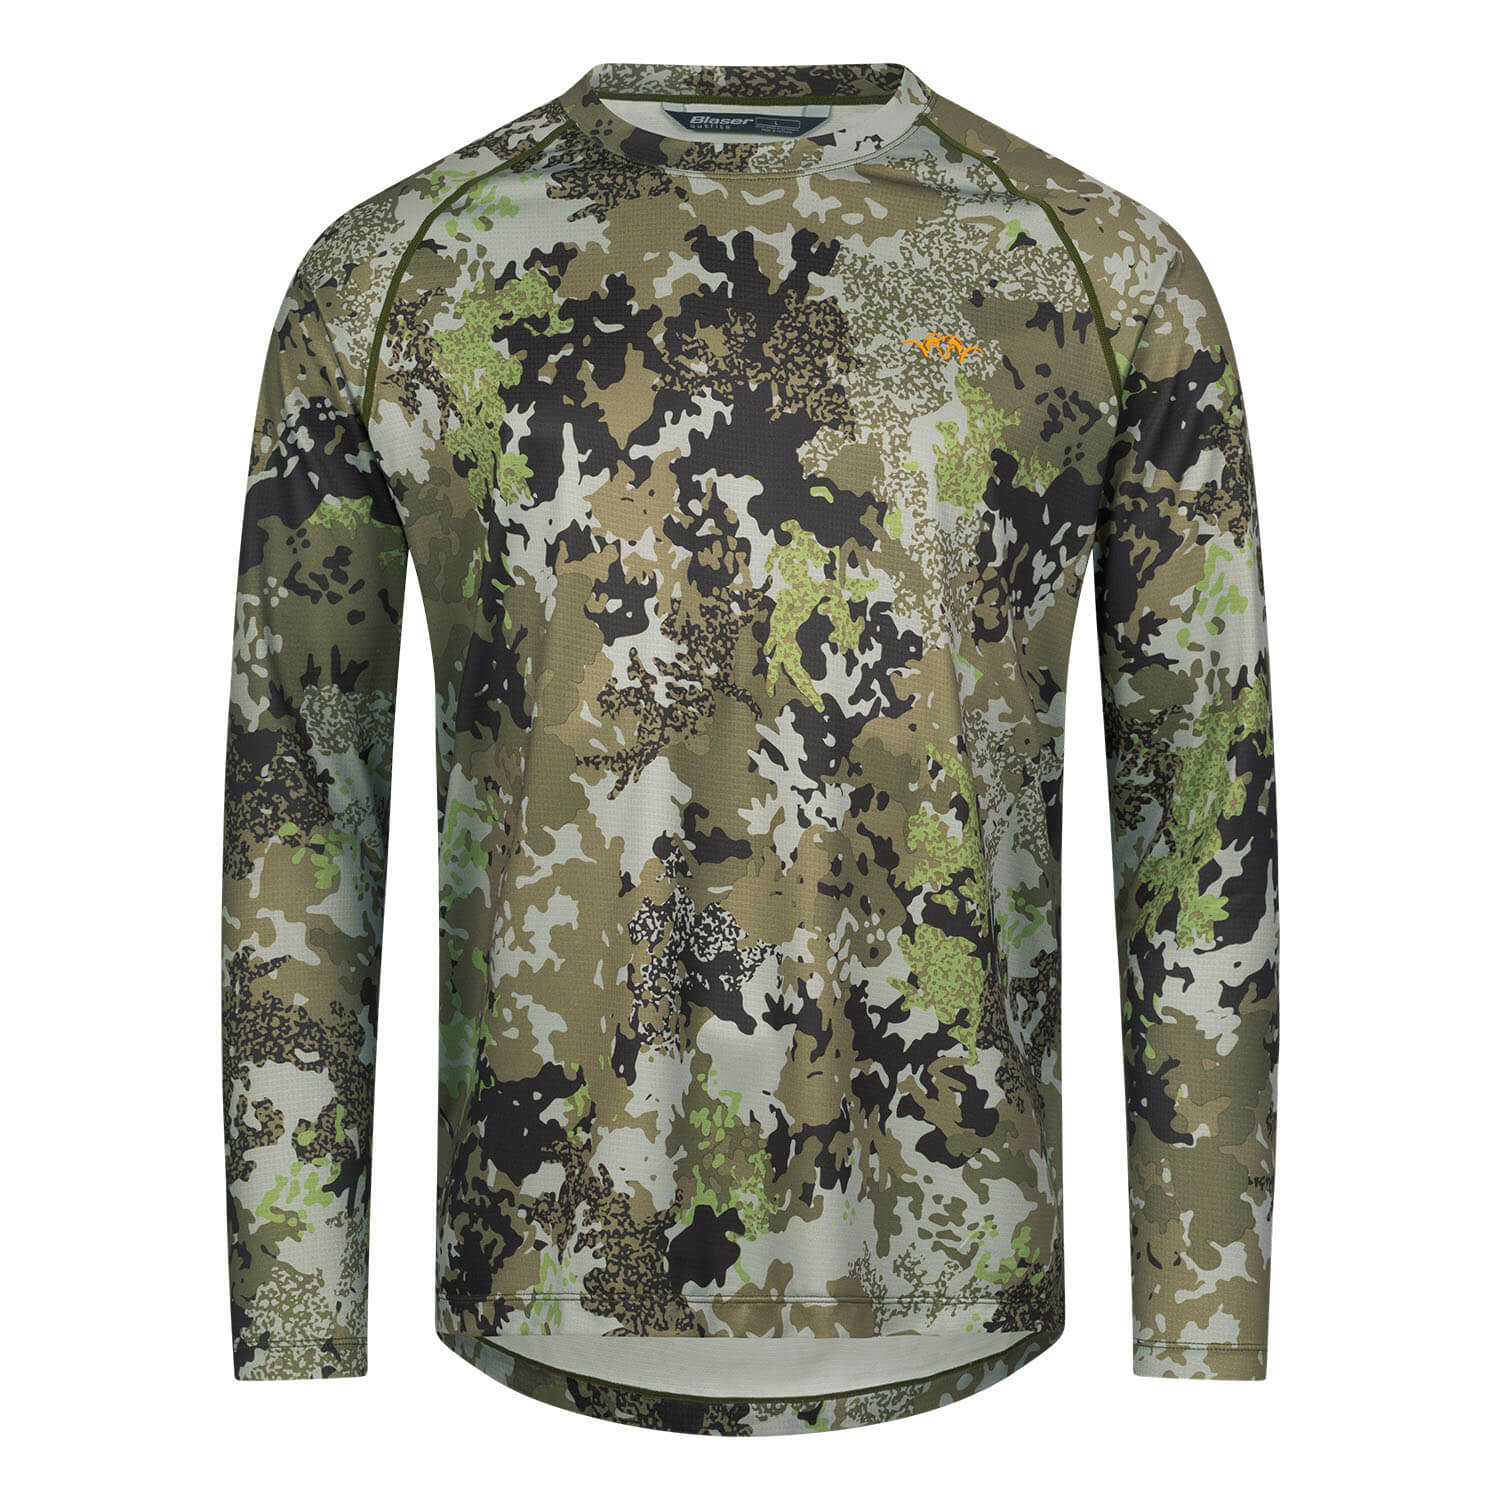 Blaser HunTec longsleeve shirt tech 23 (camo) - Camouflage Shirts